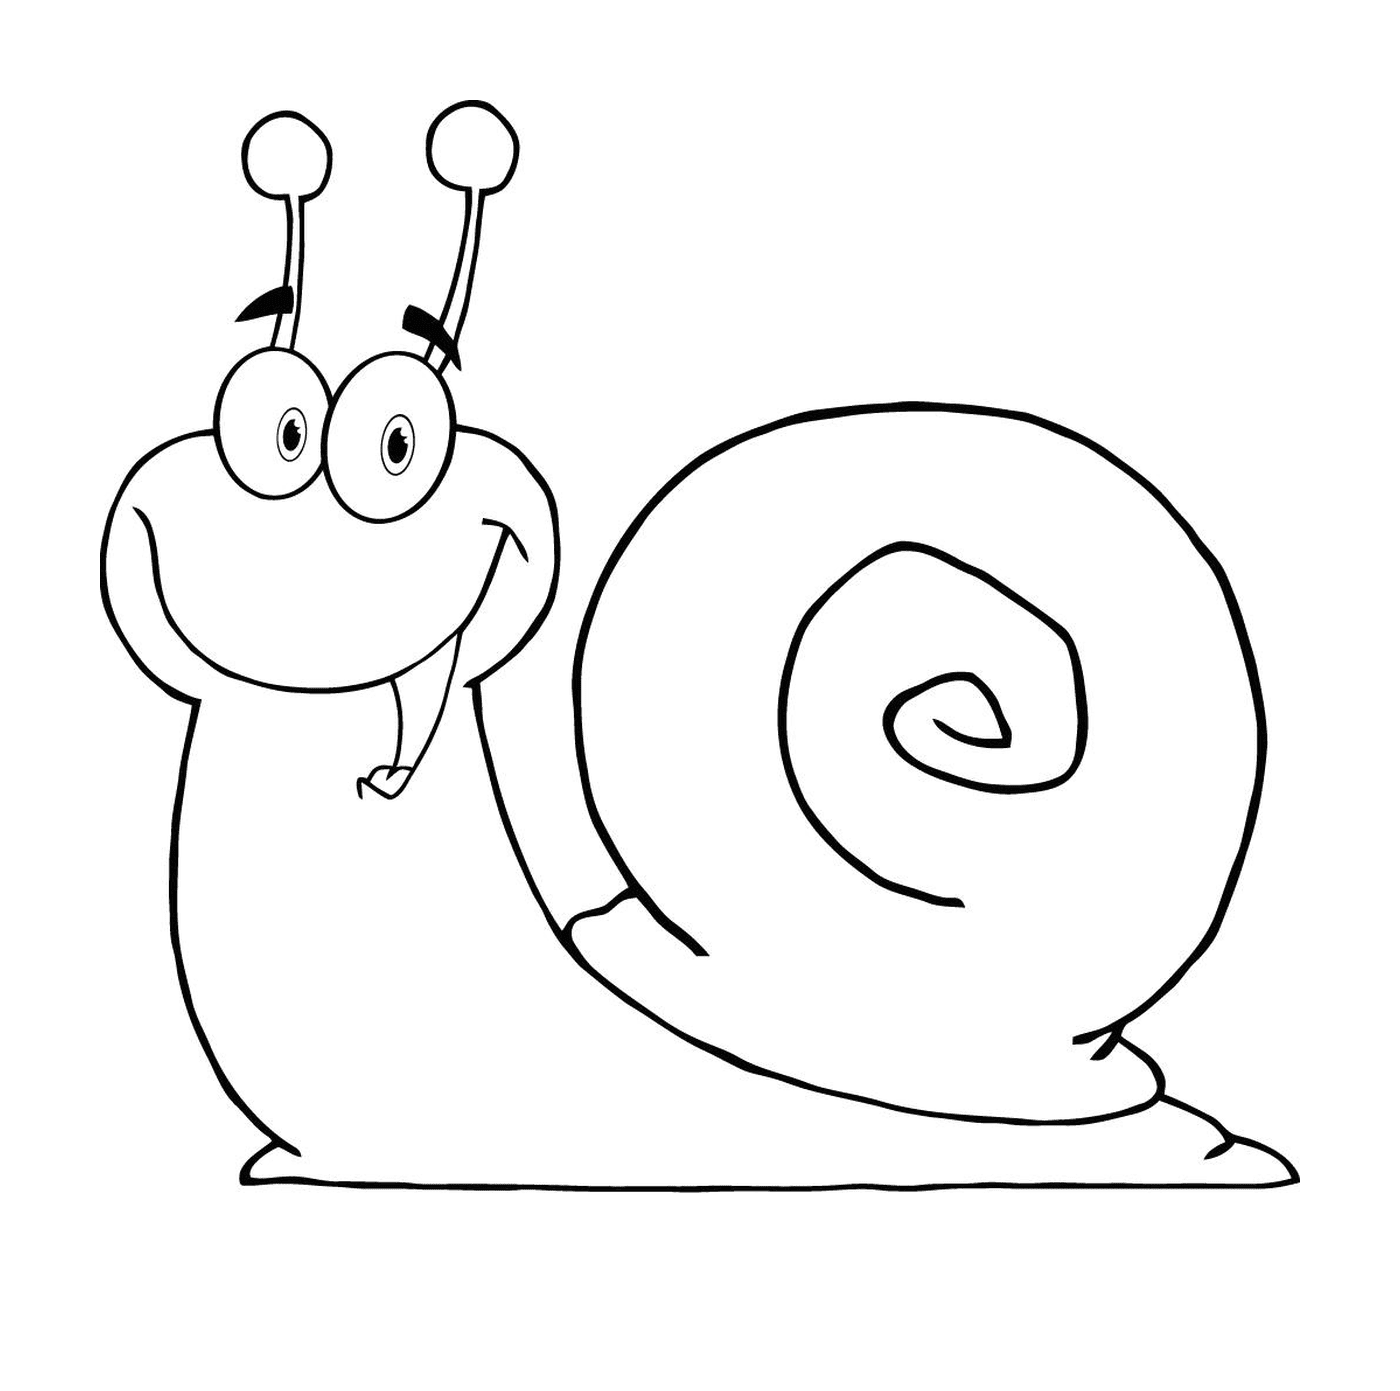  快乐快乐的蜗牛 